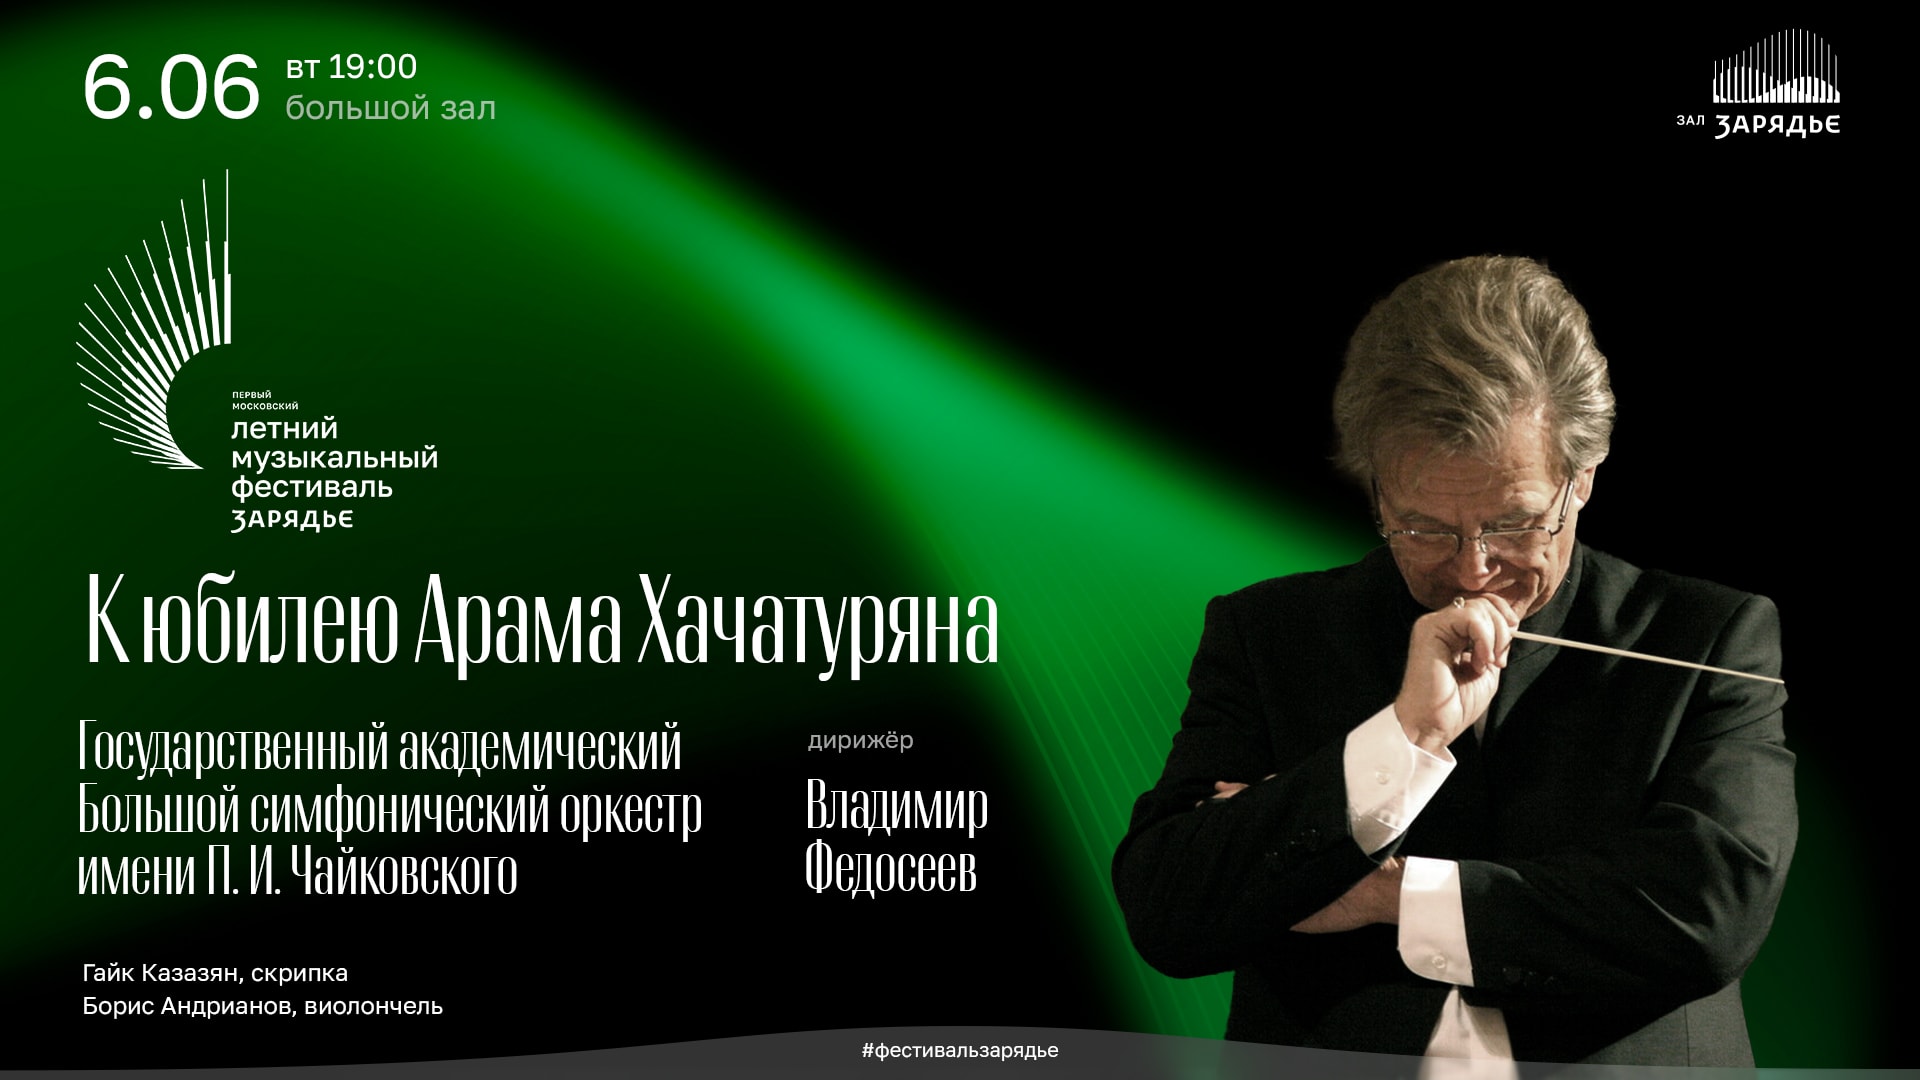 ولادیمیر فدوسیف و BSO در روز تولد آرام خاچاتوریان کنسرت خواهند داشت